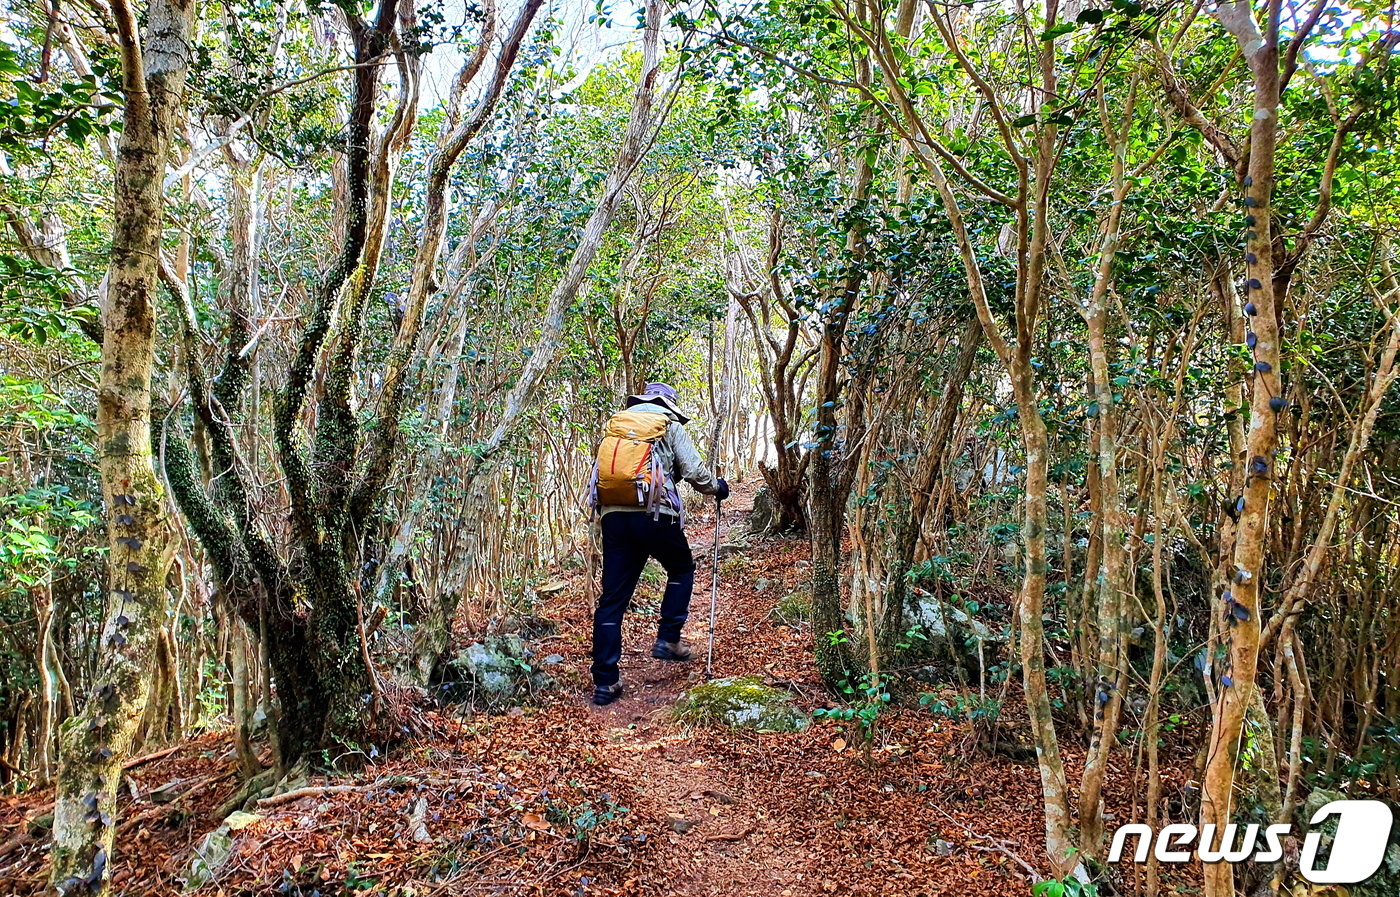 동백나무, 후박나무 등의 상록수림 숲터널이 계속 이어지는 능선의 등산로. 숲그늘과 바닷바람으로 시원한 산행을 즐긴다 ⓒ 뉴스1